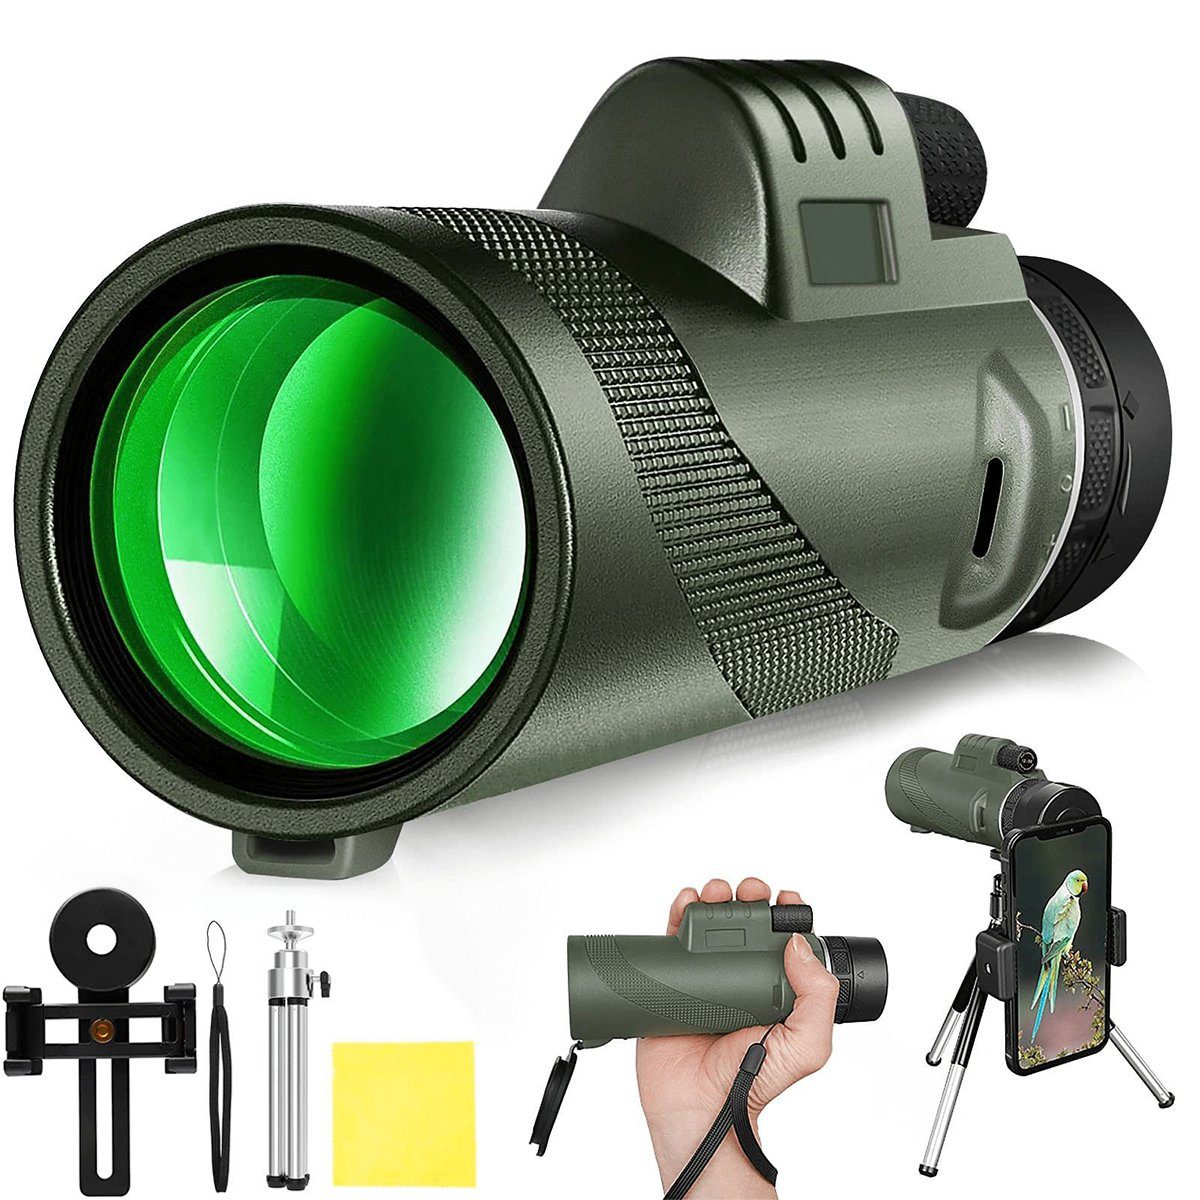 LeiGo 12 x 50 HD Ferngläser, Monokulare, Teleskope, Vogelbeobachter  Fernglas (Mit Handy-Clip/Stativ, für  Vogelbeobachtung/Sportspiele/Jagd/Reisen)